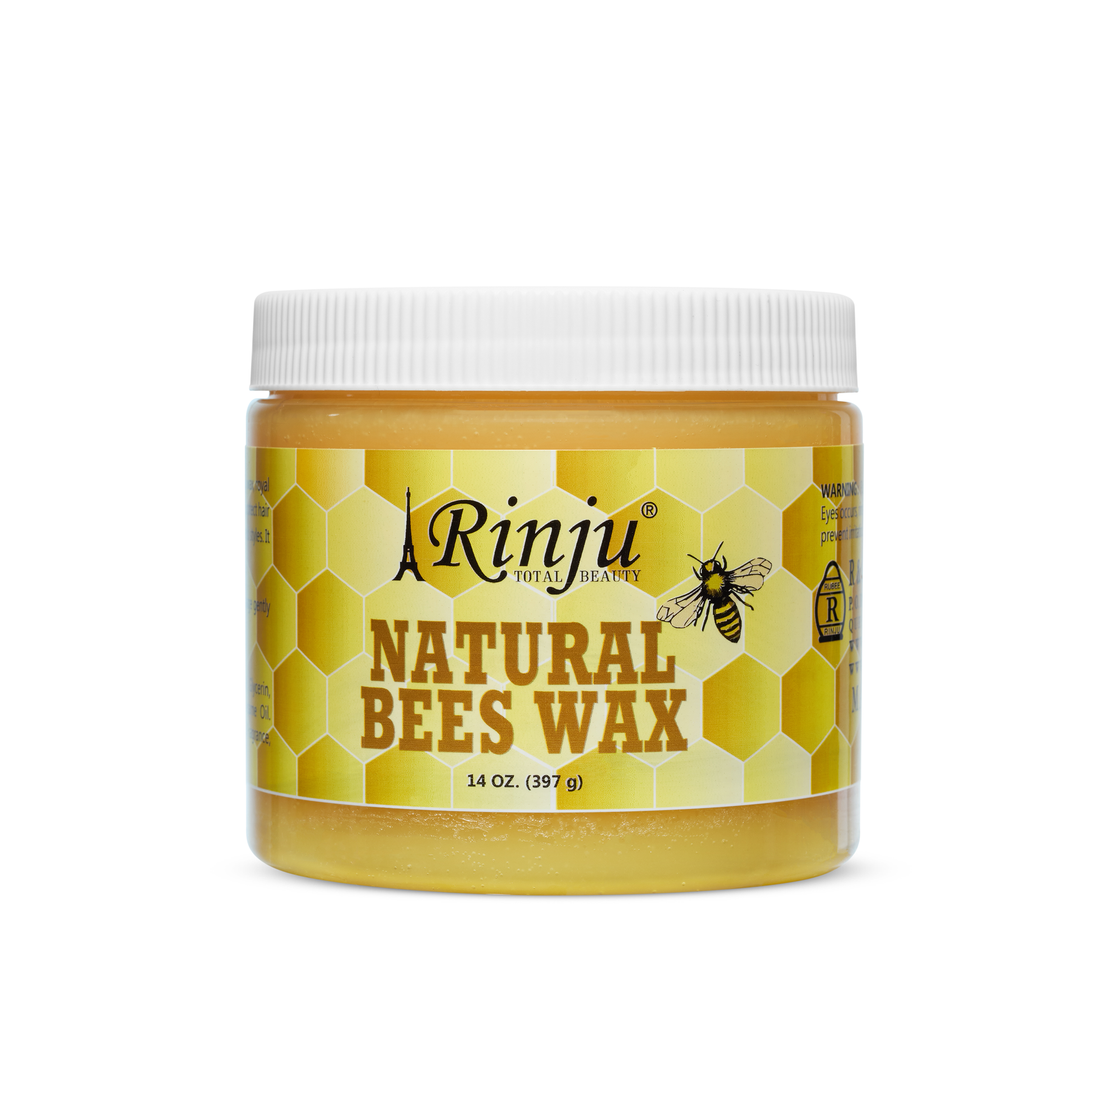 Rinju Natural Bees Wax